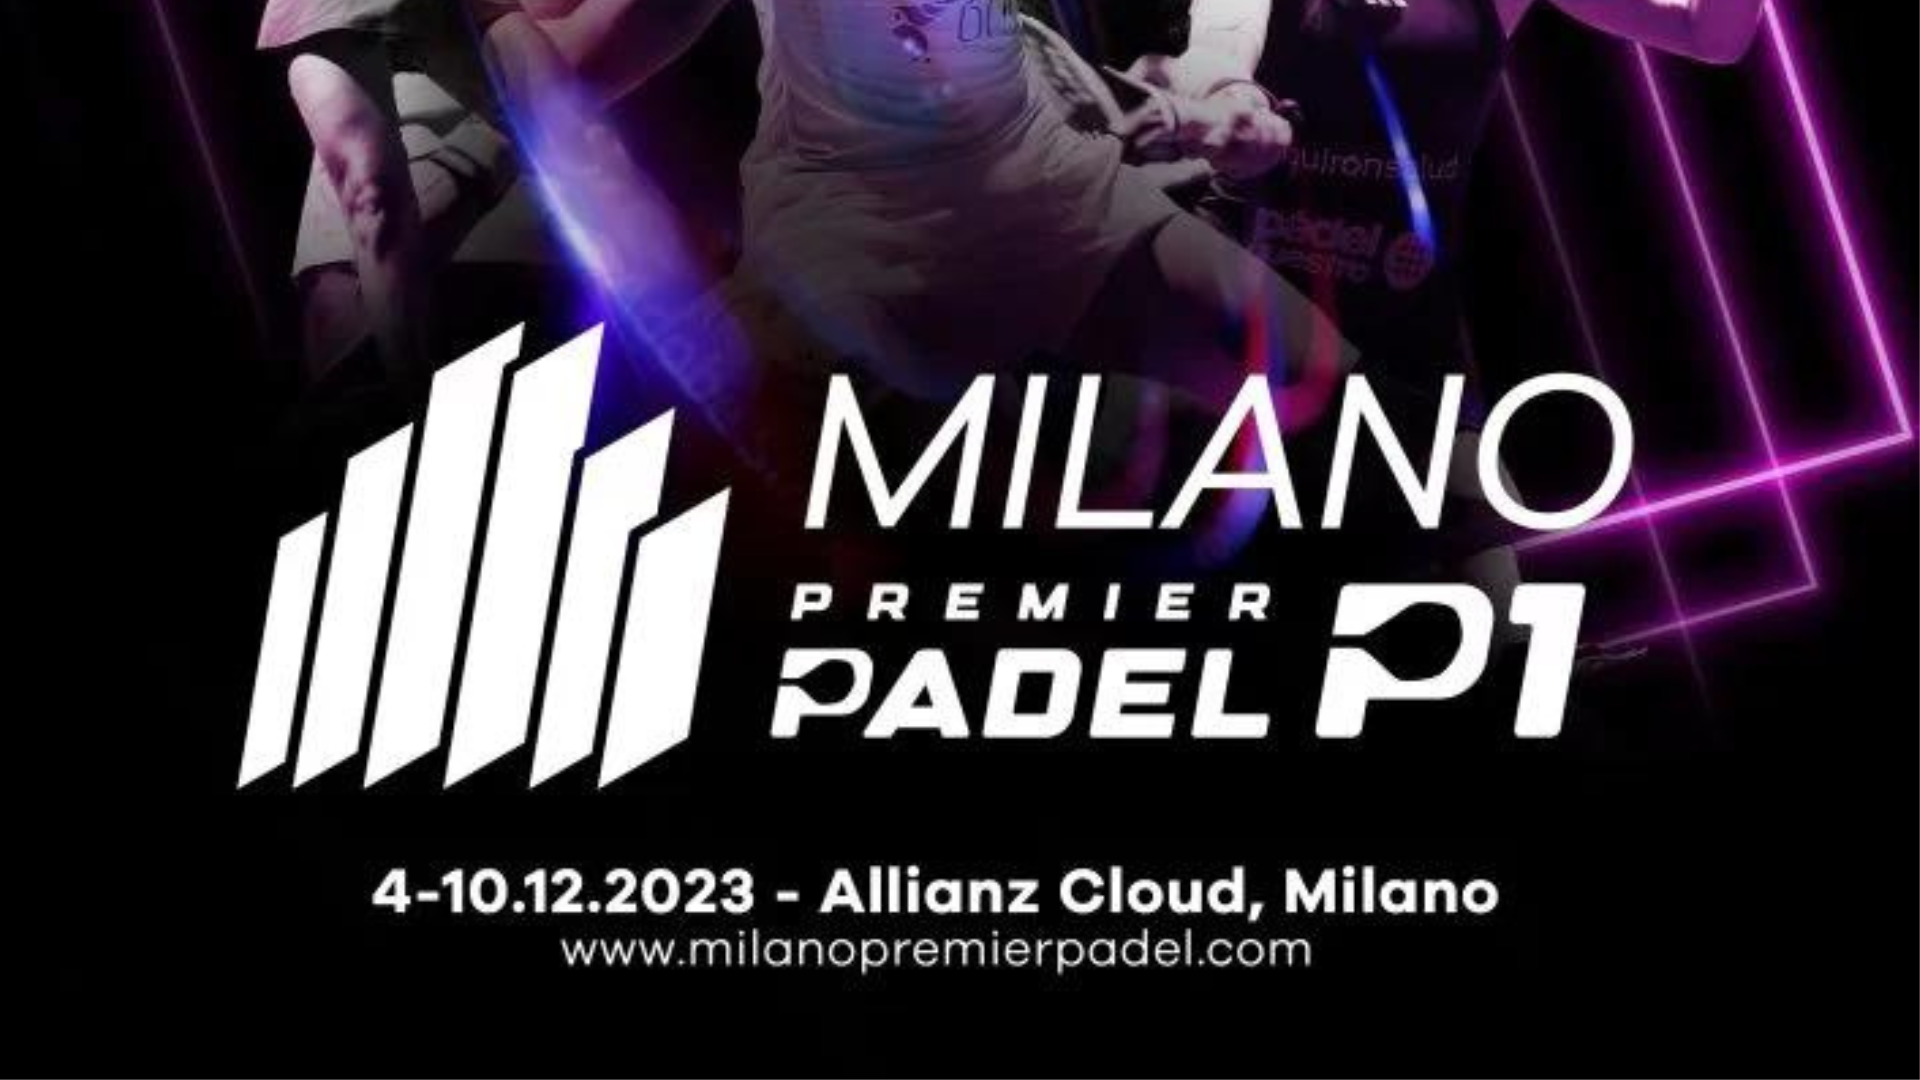 Premier Padel Milano P1 – Ontdek de geregistreerde spelers, met nieuwe paren aan de Franse kant